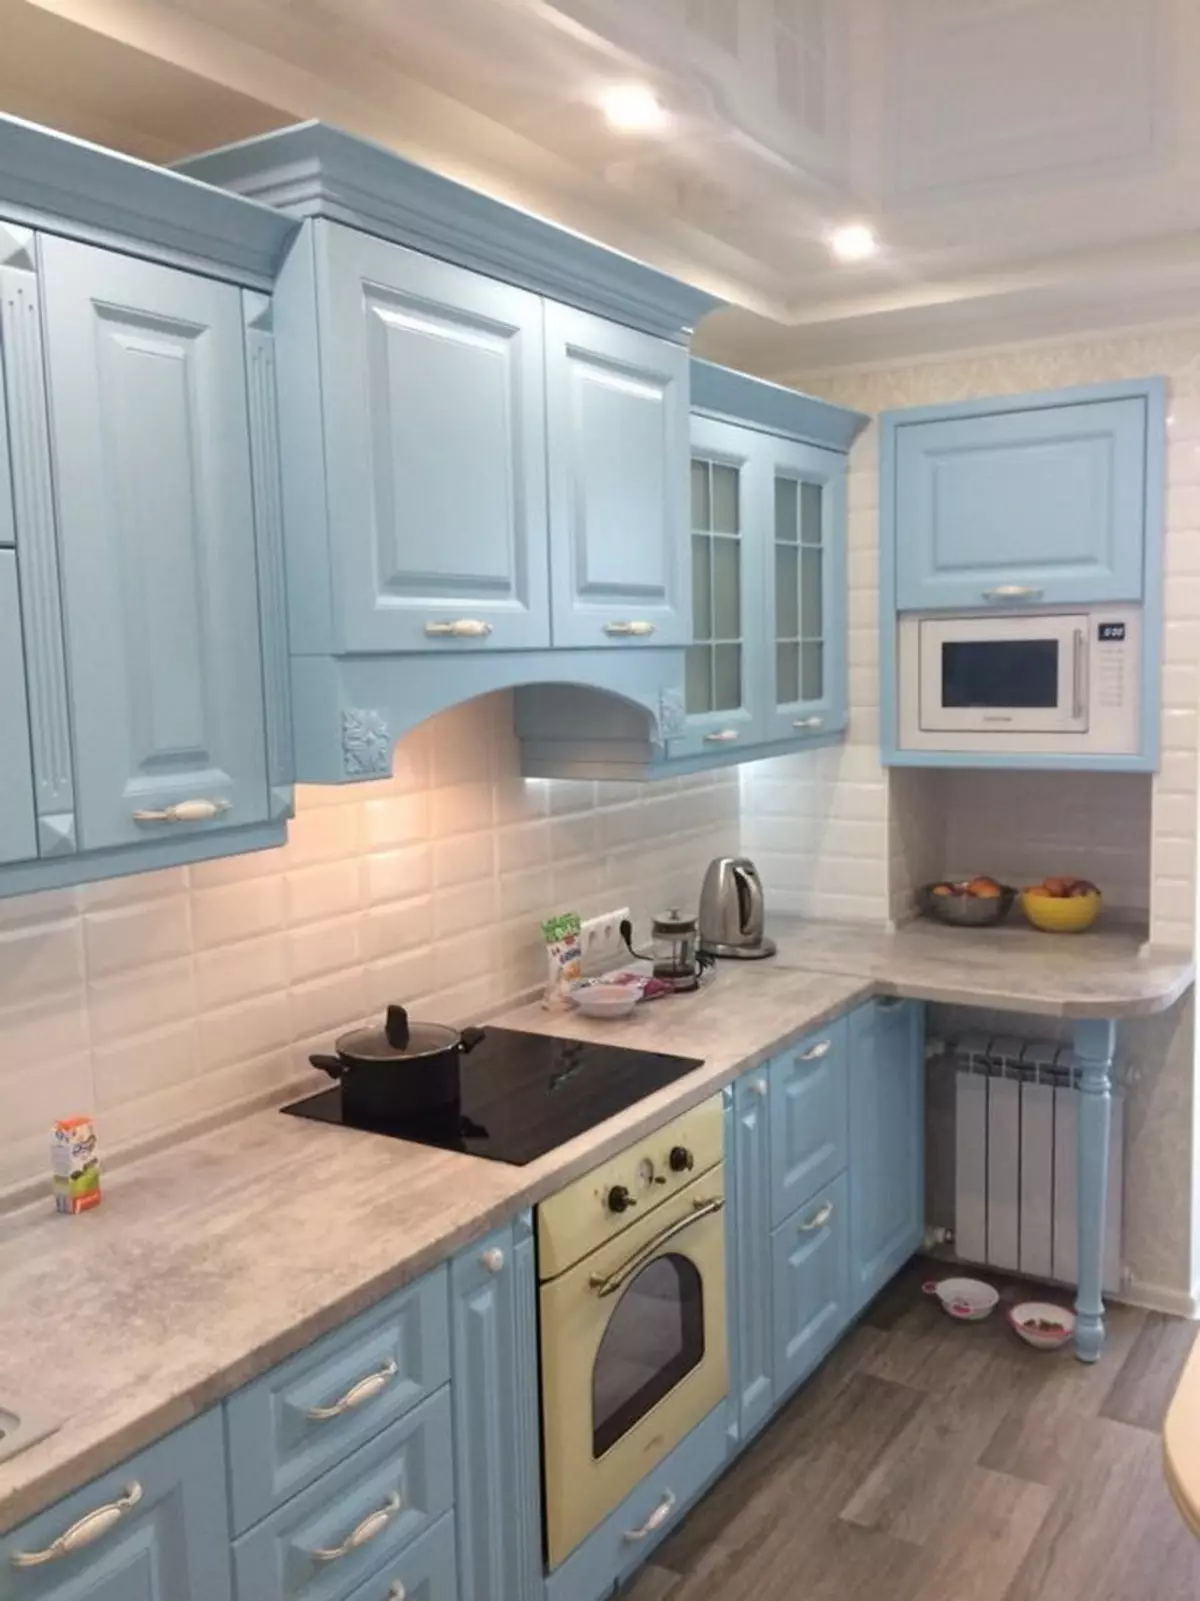 藍廚房（82張照片）：在藍色廚房套裝內部合併哪種顏色？淺藍色和深藍色色調的廚房設計 9555_66